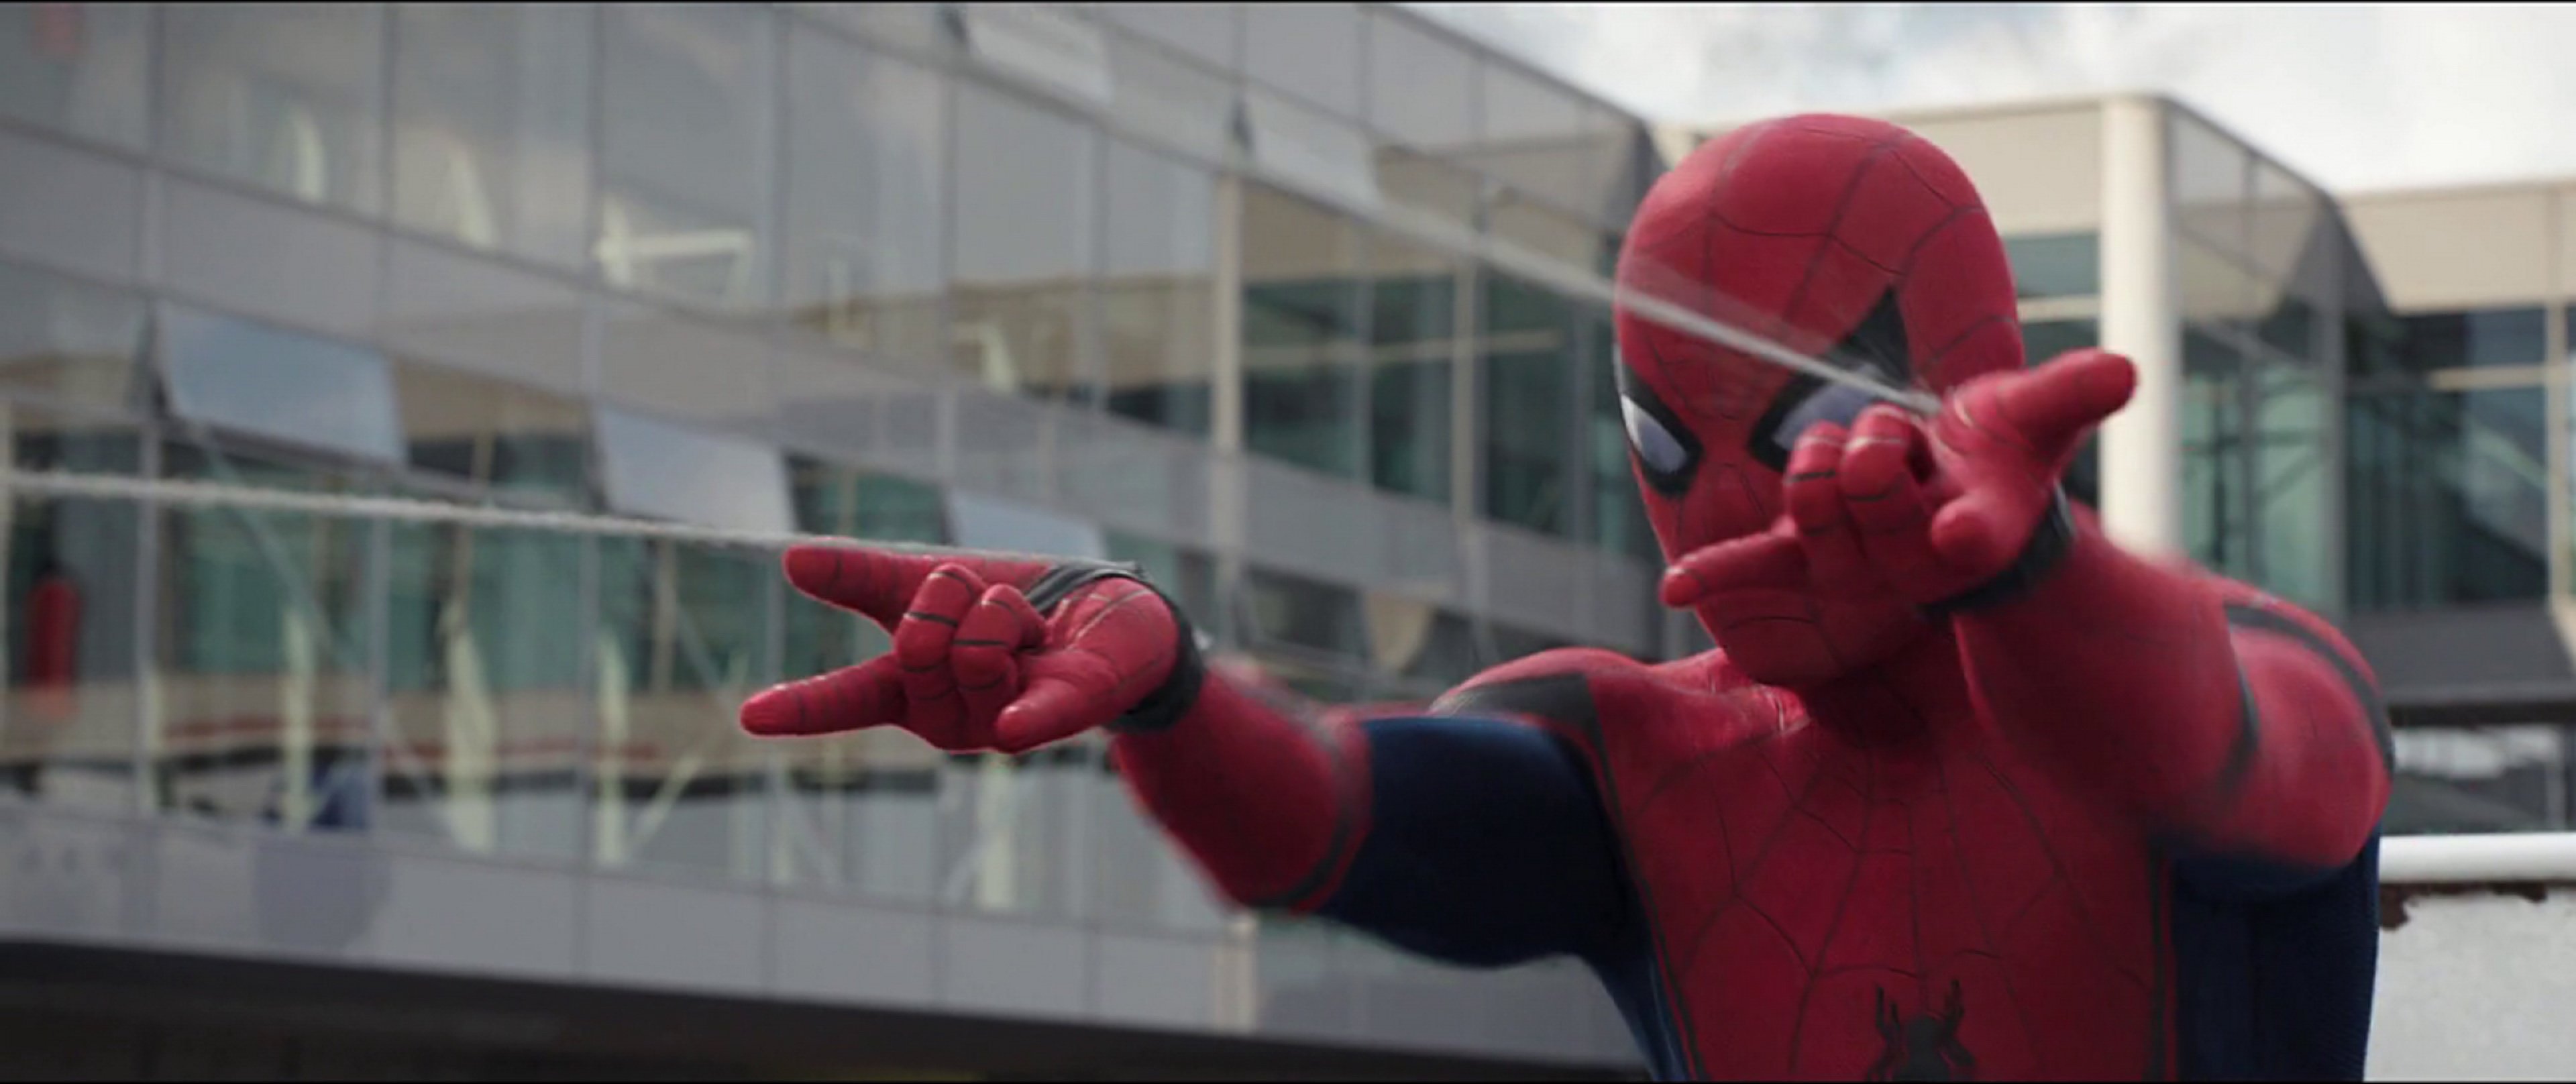 Spider-Man Homecoming : Le Vautour se révèle dans la première bande-annonce